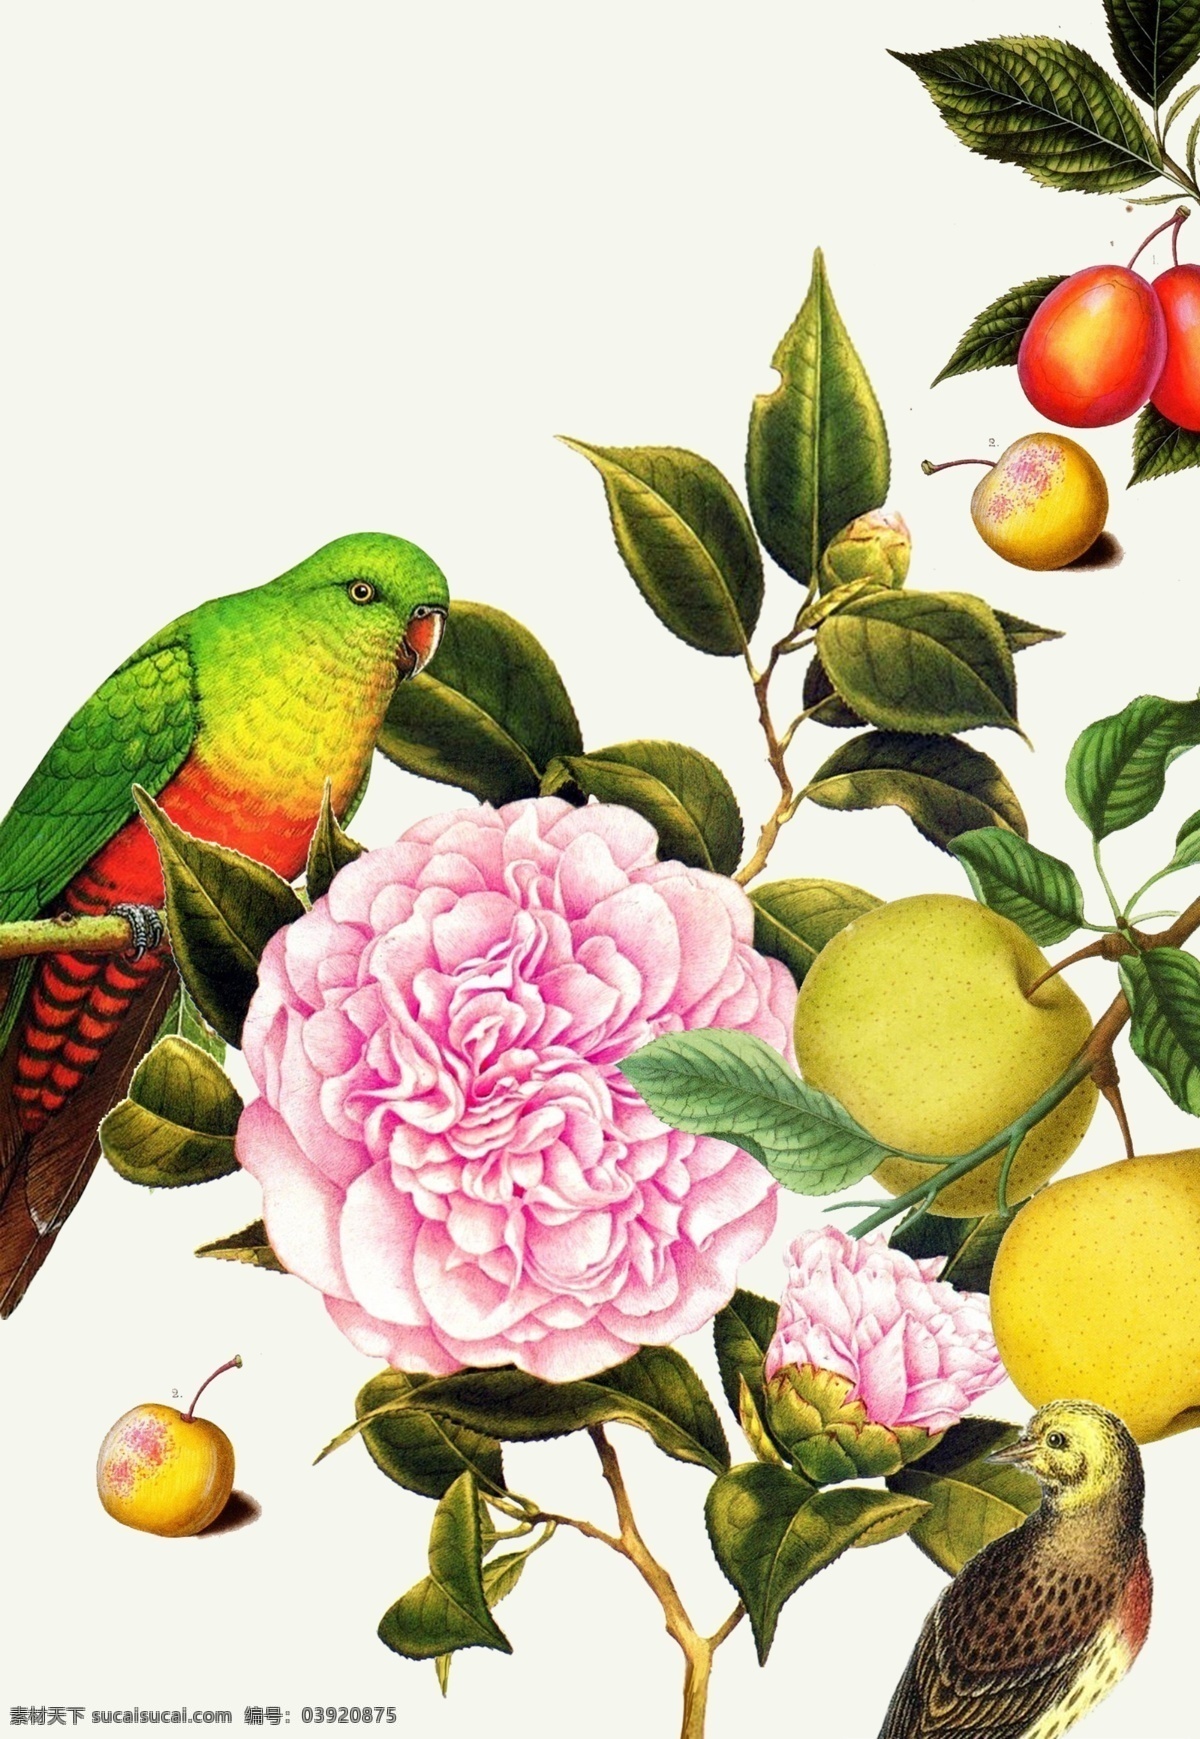 复古花鸟插画 复古 花鸟 鹦鹉 牡丹 花卉 水果 樱桃 苹果 梨子 鸟 装饰画 花卉插画 卡通设计